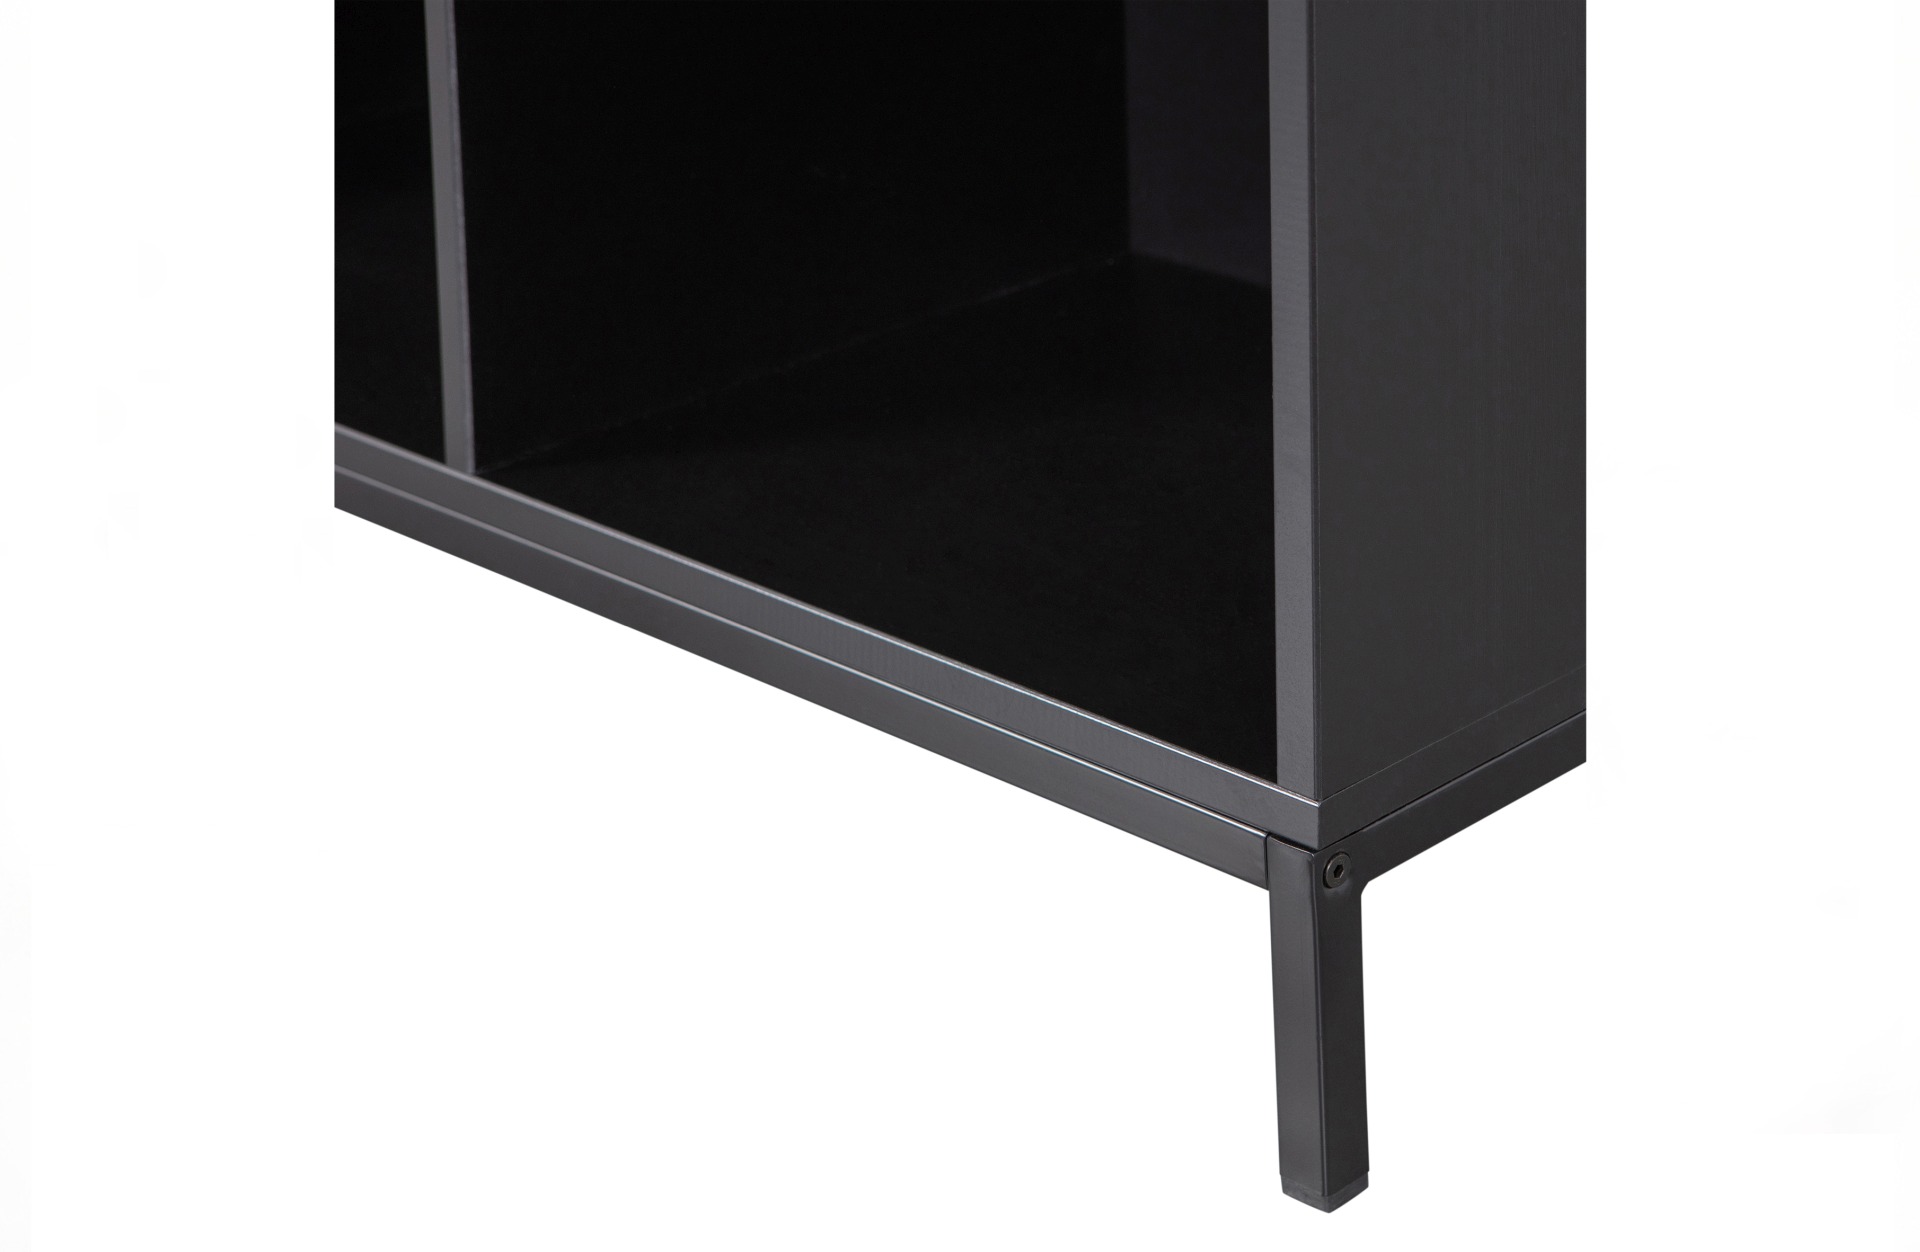 Der Schrank VT Lower Case überzeugt mit seinem klassischen Design. Gefertigt wurde er aus Kiefernholz, welches einen schwarzen Farbton besitzt. Das Gestell ist aus Metall und hat eine schwarze Farbe. Der Schrank verfügt über vier offene Fächer.